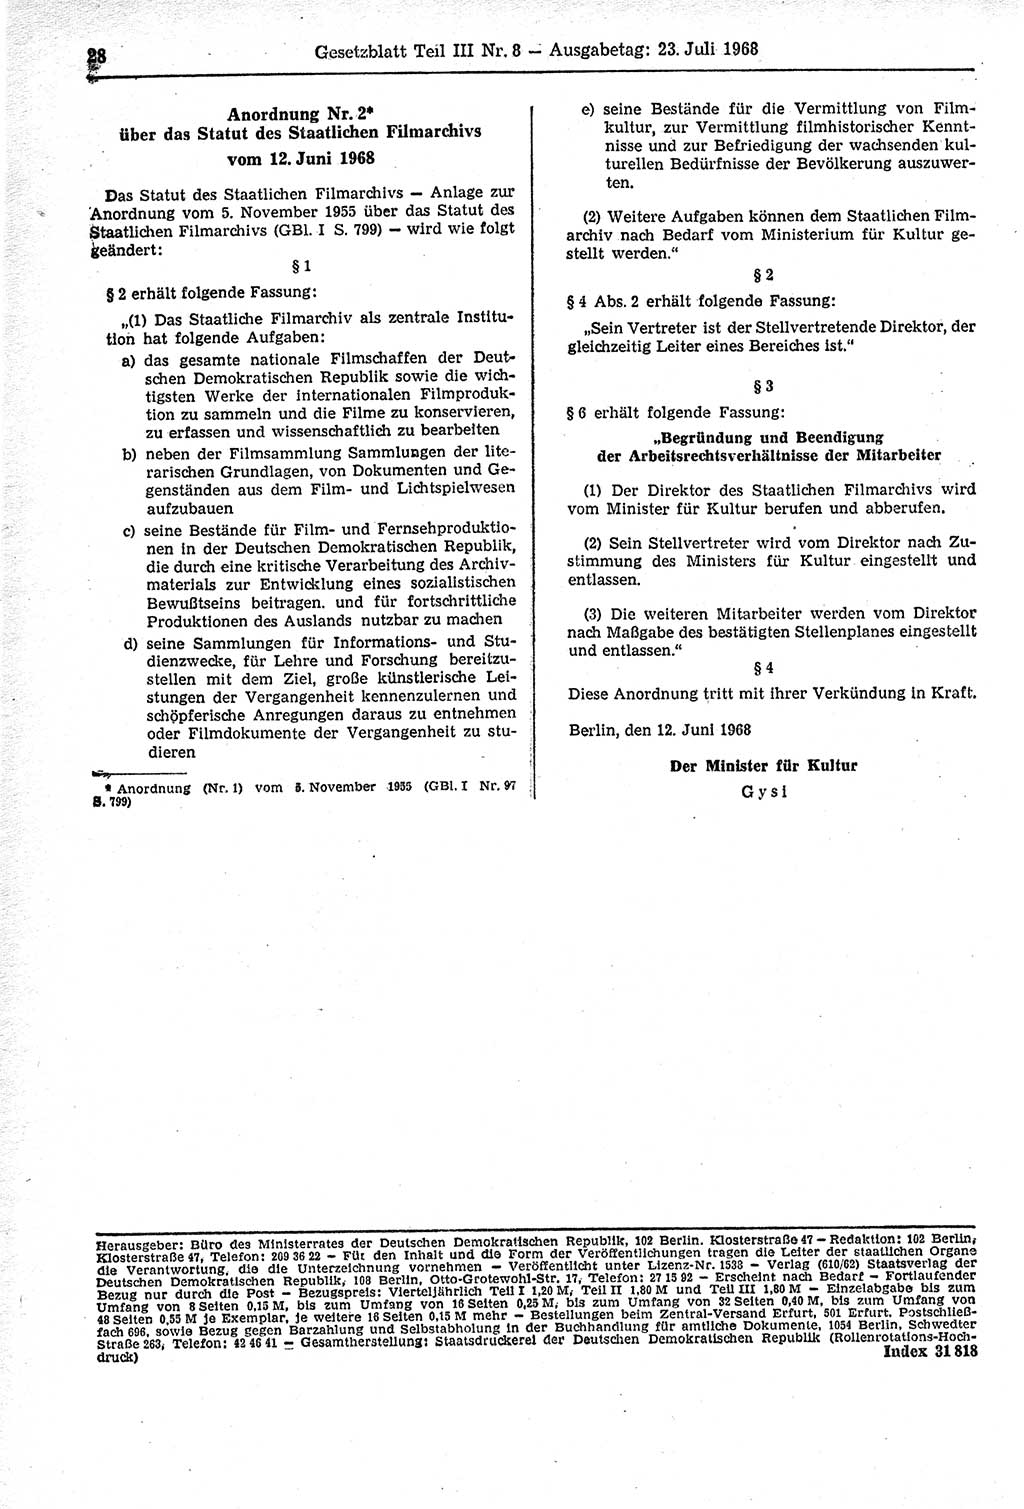 Gesetzblatt (GBl.) der Deutschen Demokratischen Republik (DDR) Teil ⅠⅠⅠ 1968, Seite 28 (GBl. DDR ⅠⅠⅠ 1968, S. 28)